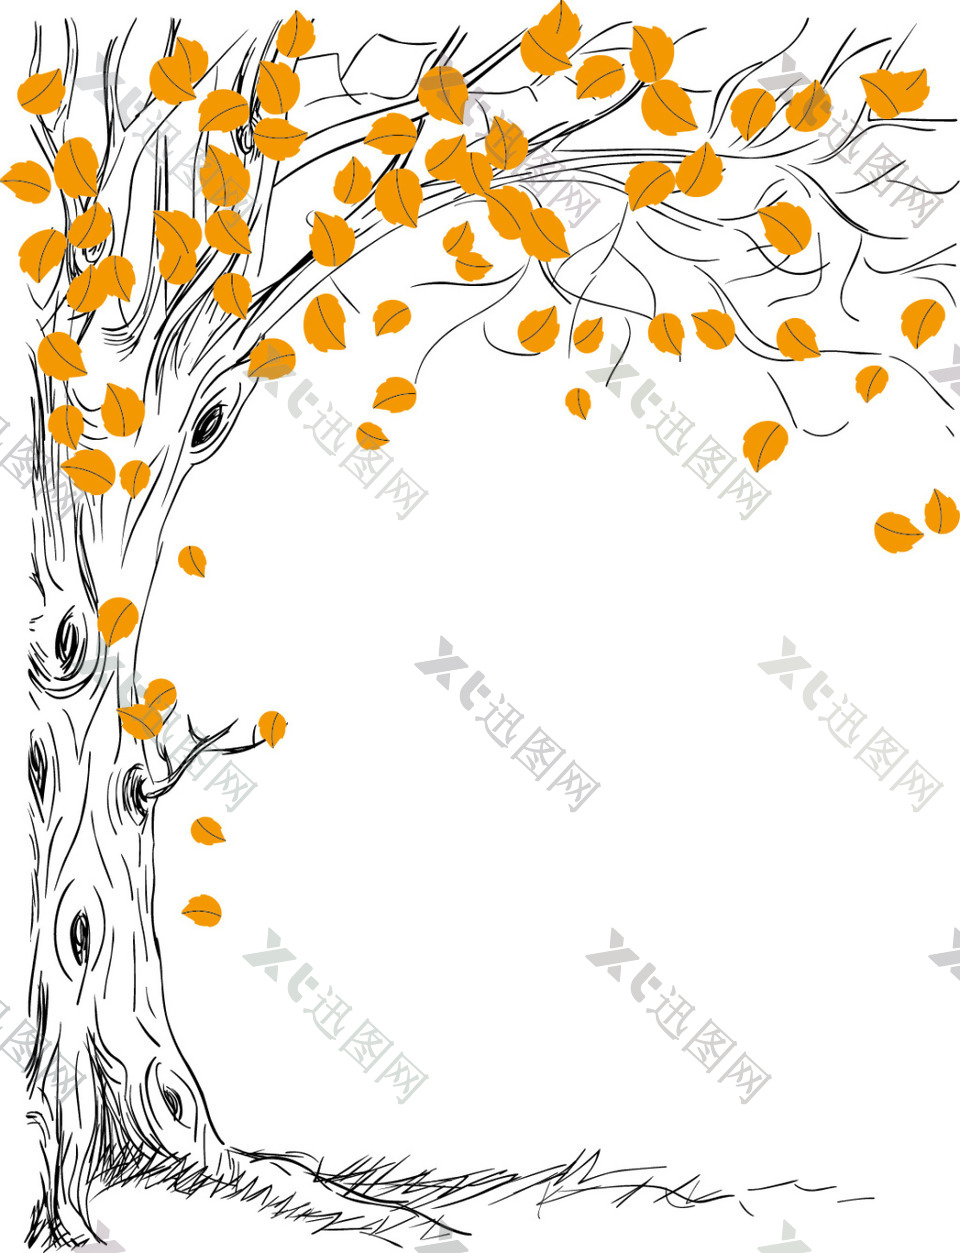 手绘矢量树背景素材设计